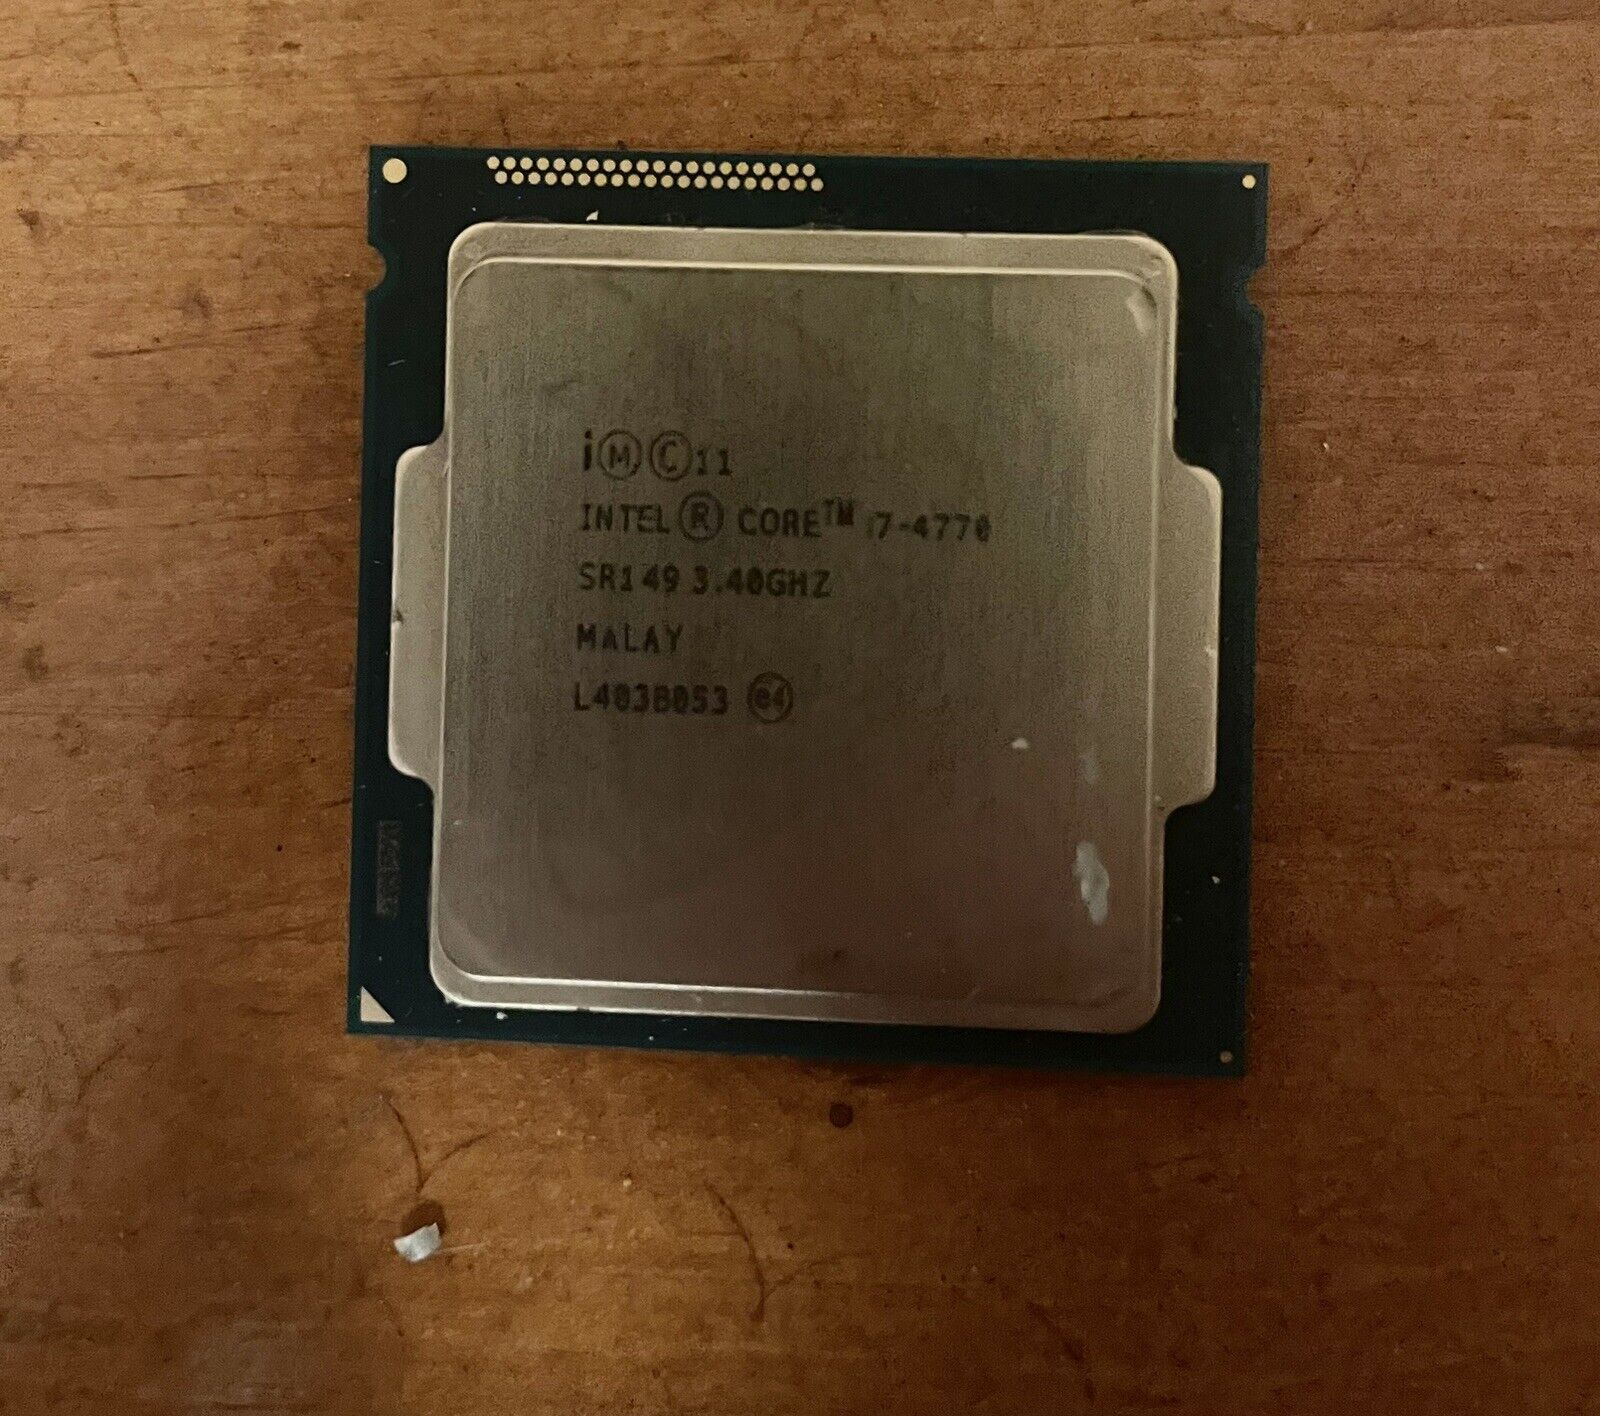 Intel Core i7-4770 Quad Core Desktop PC CPU Processor 3.4GHz LGA1150 SR149